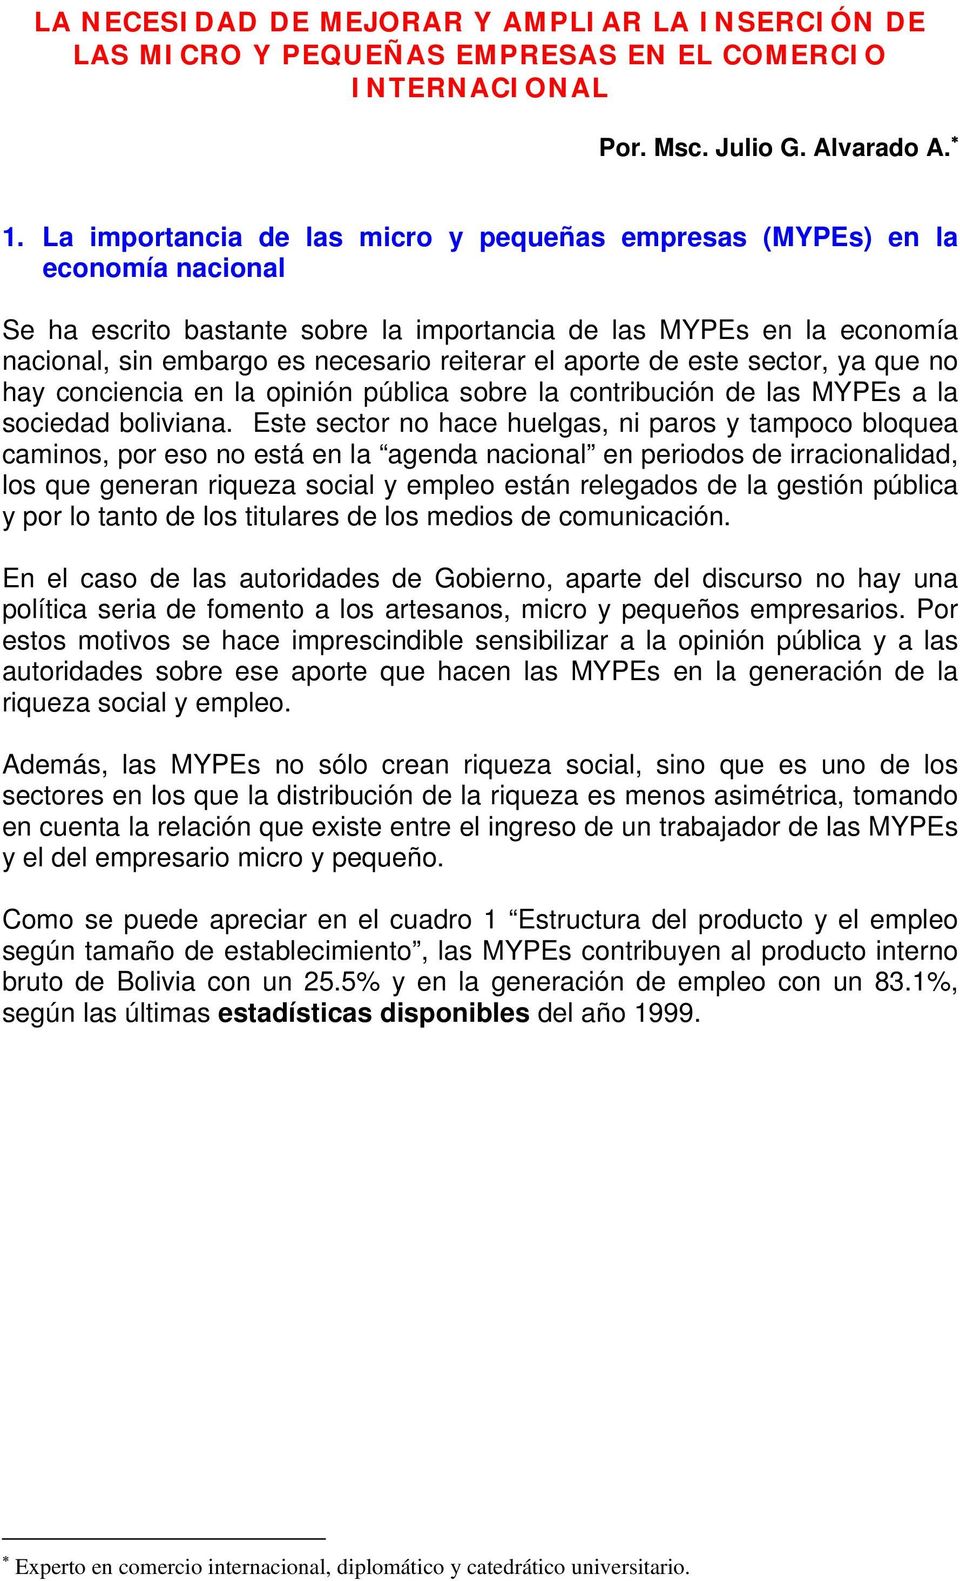 aporte de este sector, ya que no hay conciencia en la opinión pública sobre la contribución de las MYPEs a la sociedad boliviana.